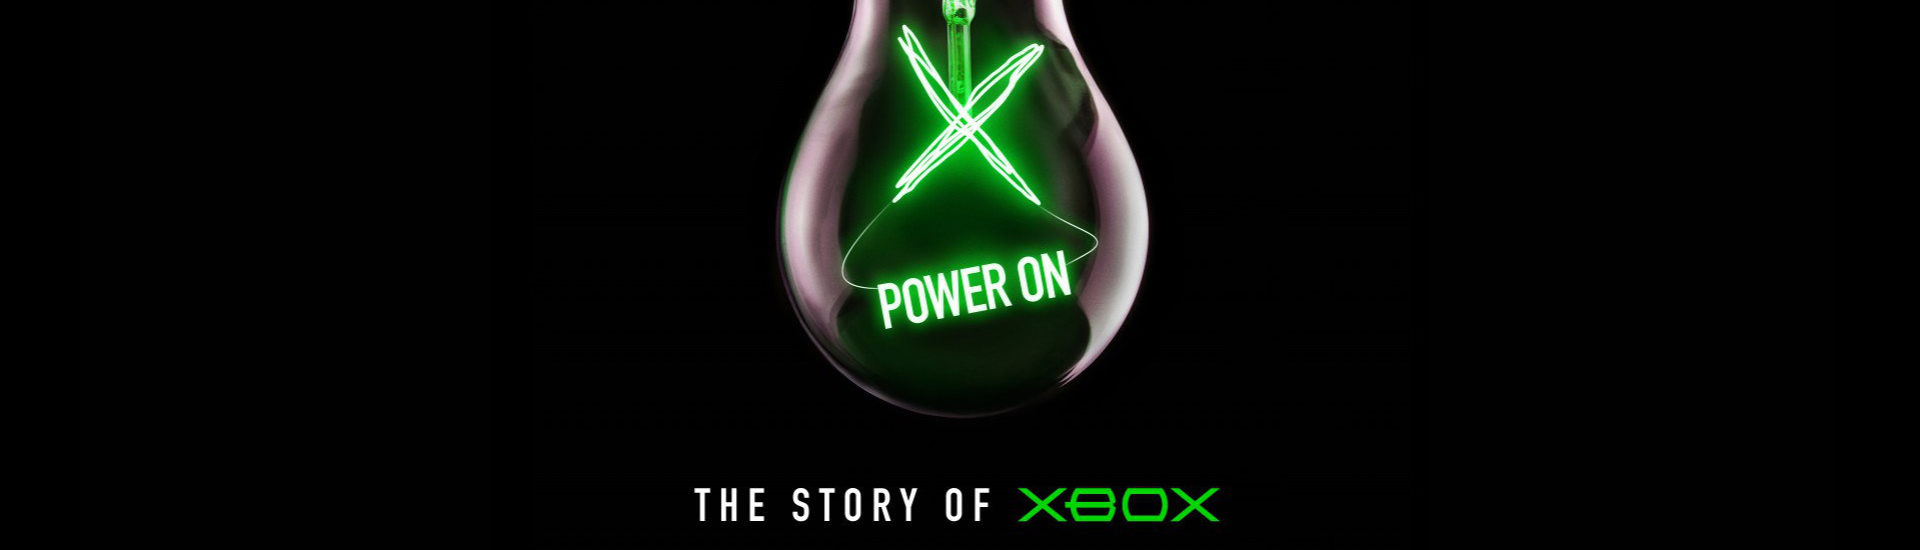 Inside Xbox – Xbox Doku erzählt alles zur Geschichte der Microsoft-Konsole